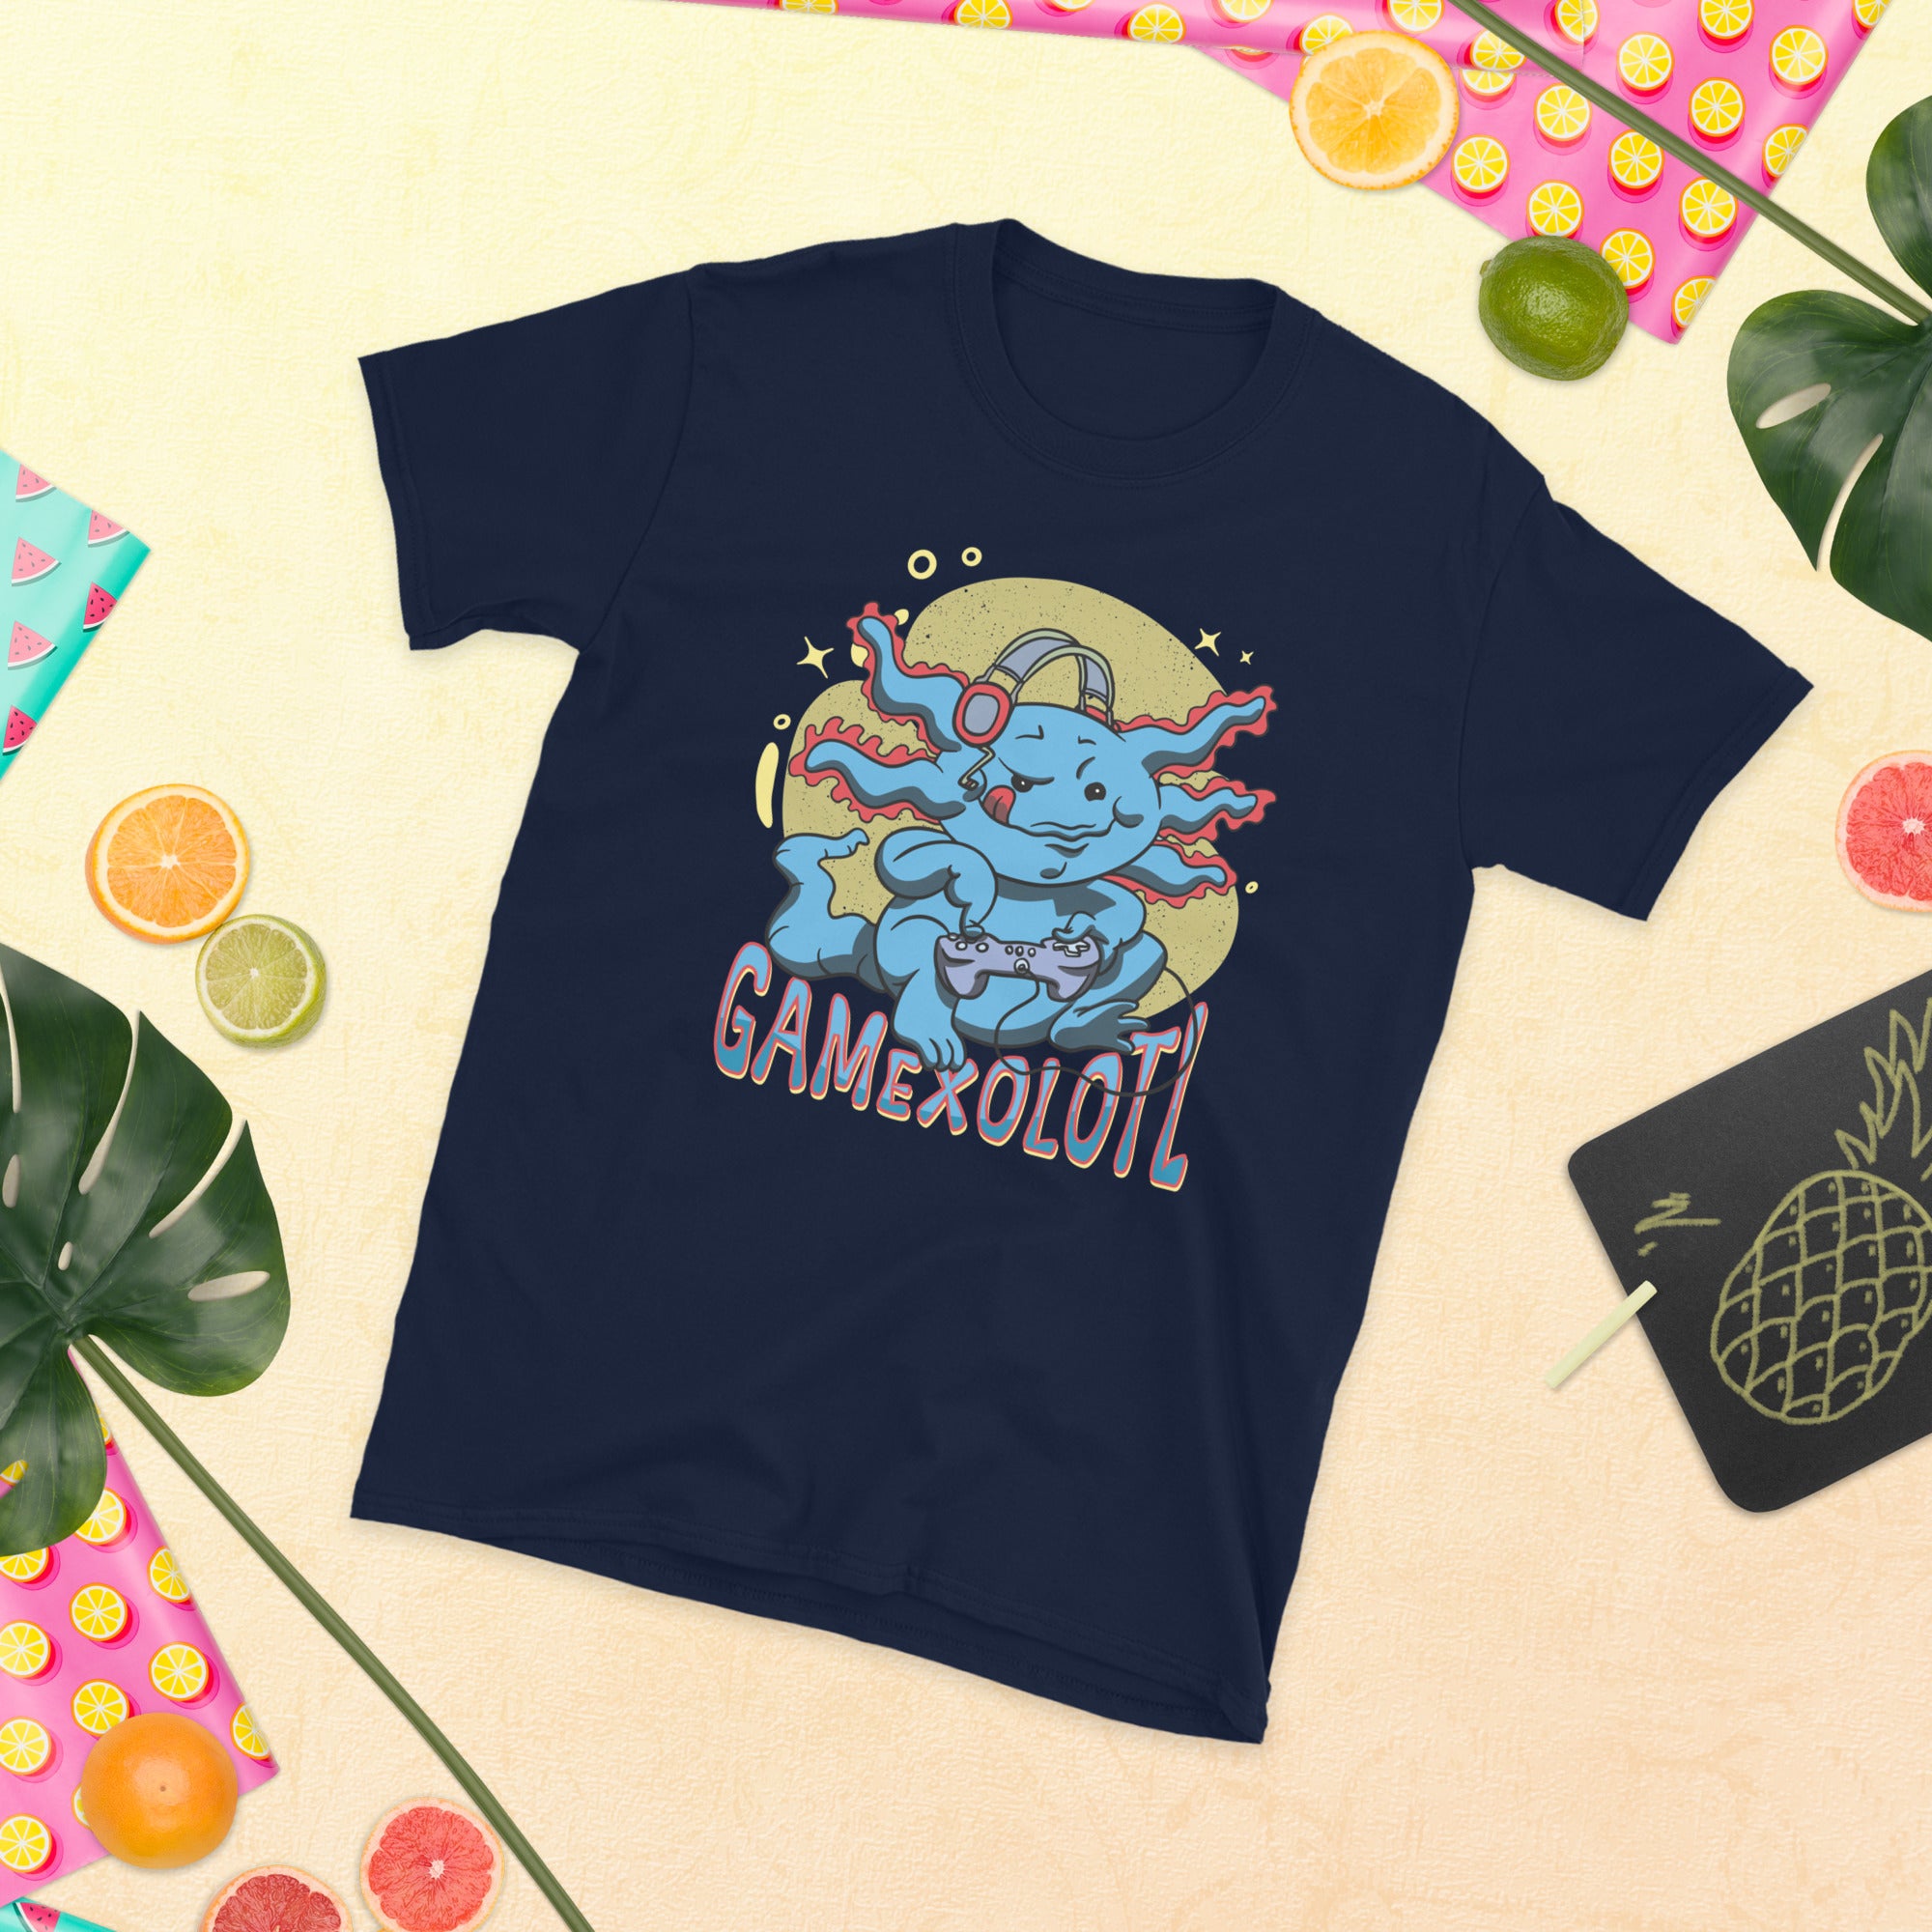 Axolotl Gamer T-Shirt, Axolotl Playing Video Games, Axolotl Shirt, Gamesolotl, Gamexolotl T Shirt, Mexican Salamander Gaming Gift